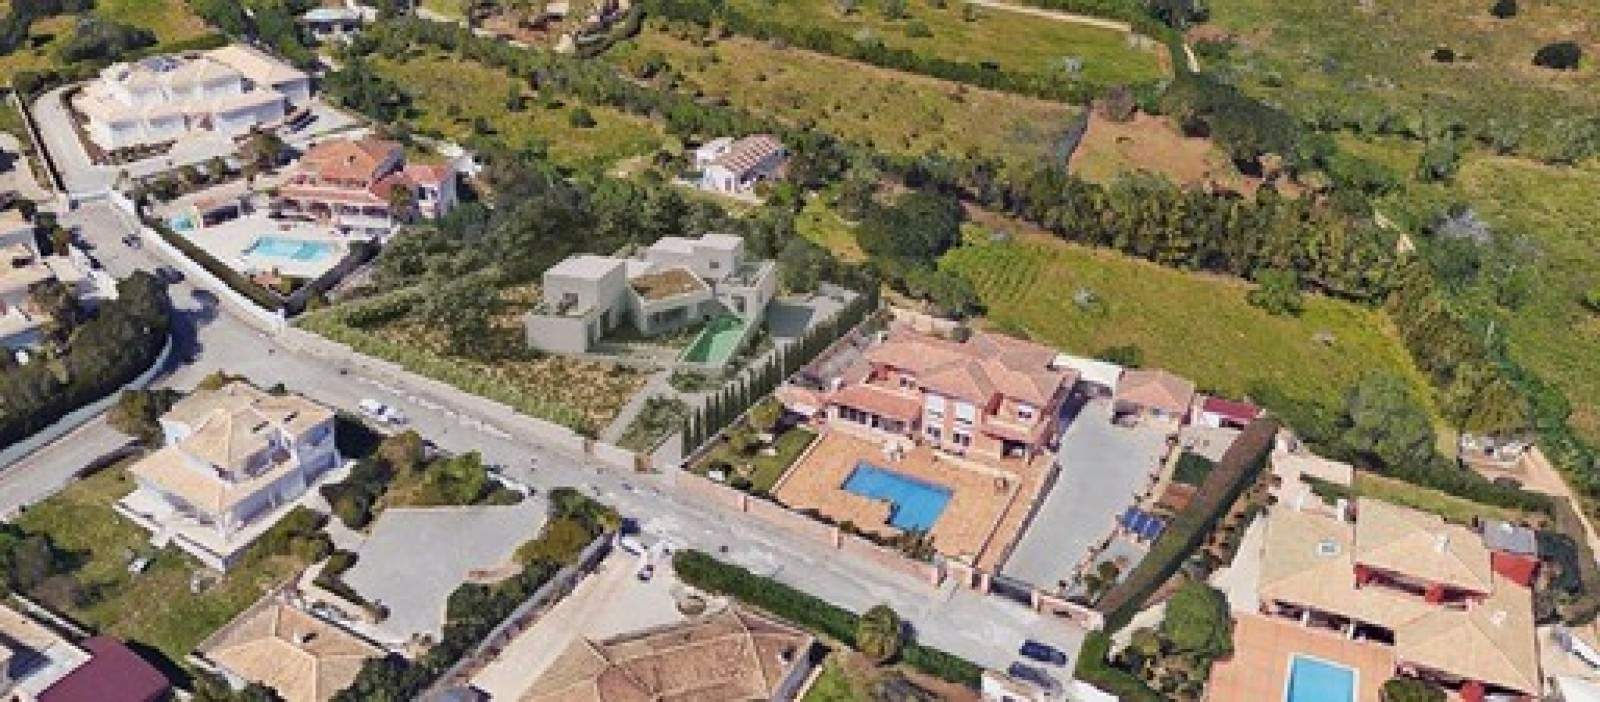 Villa de 4 dormitorios en construcción, en venta en Lagos, Algarve_208680